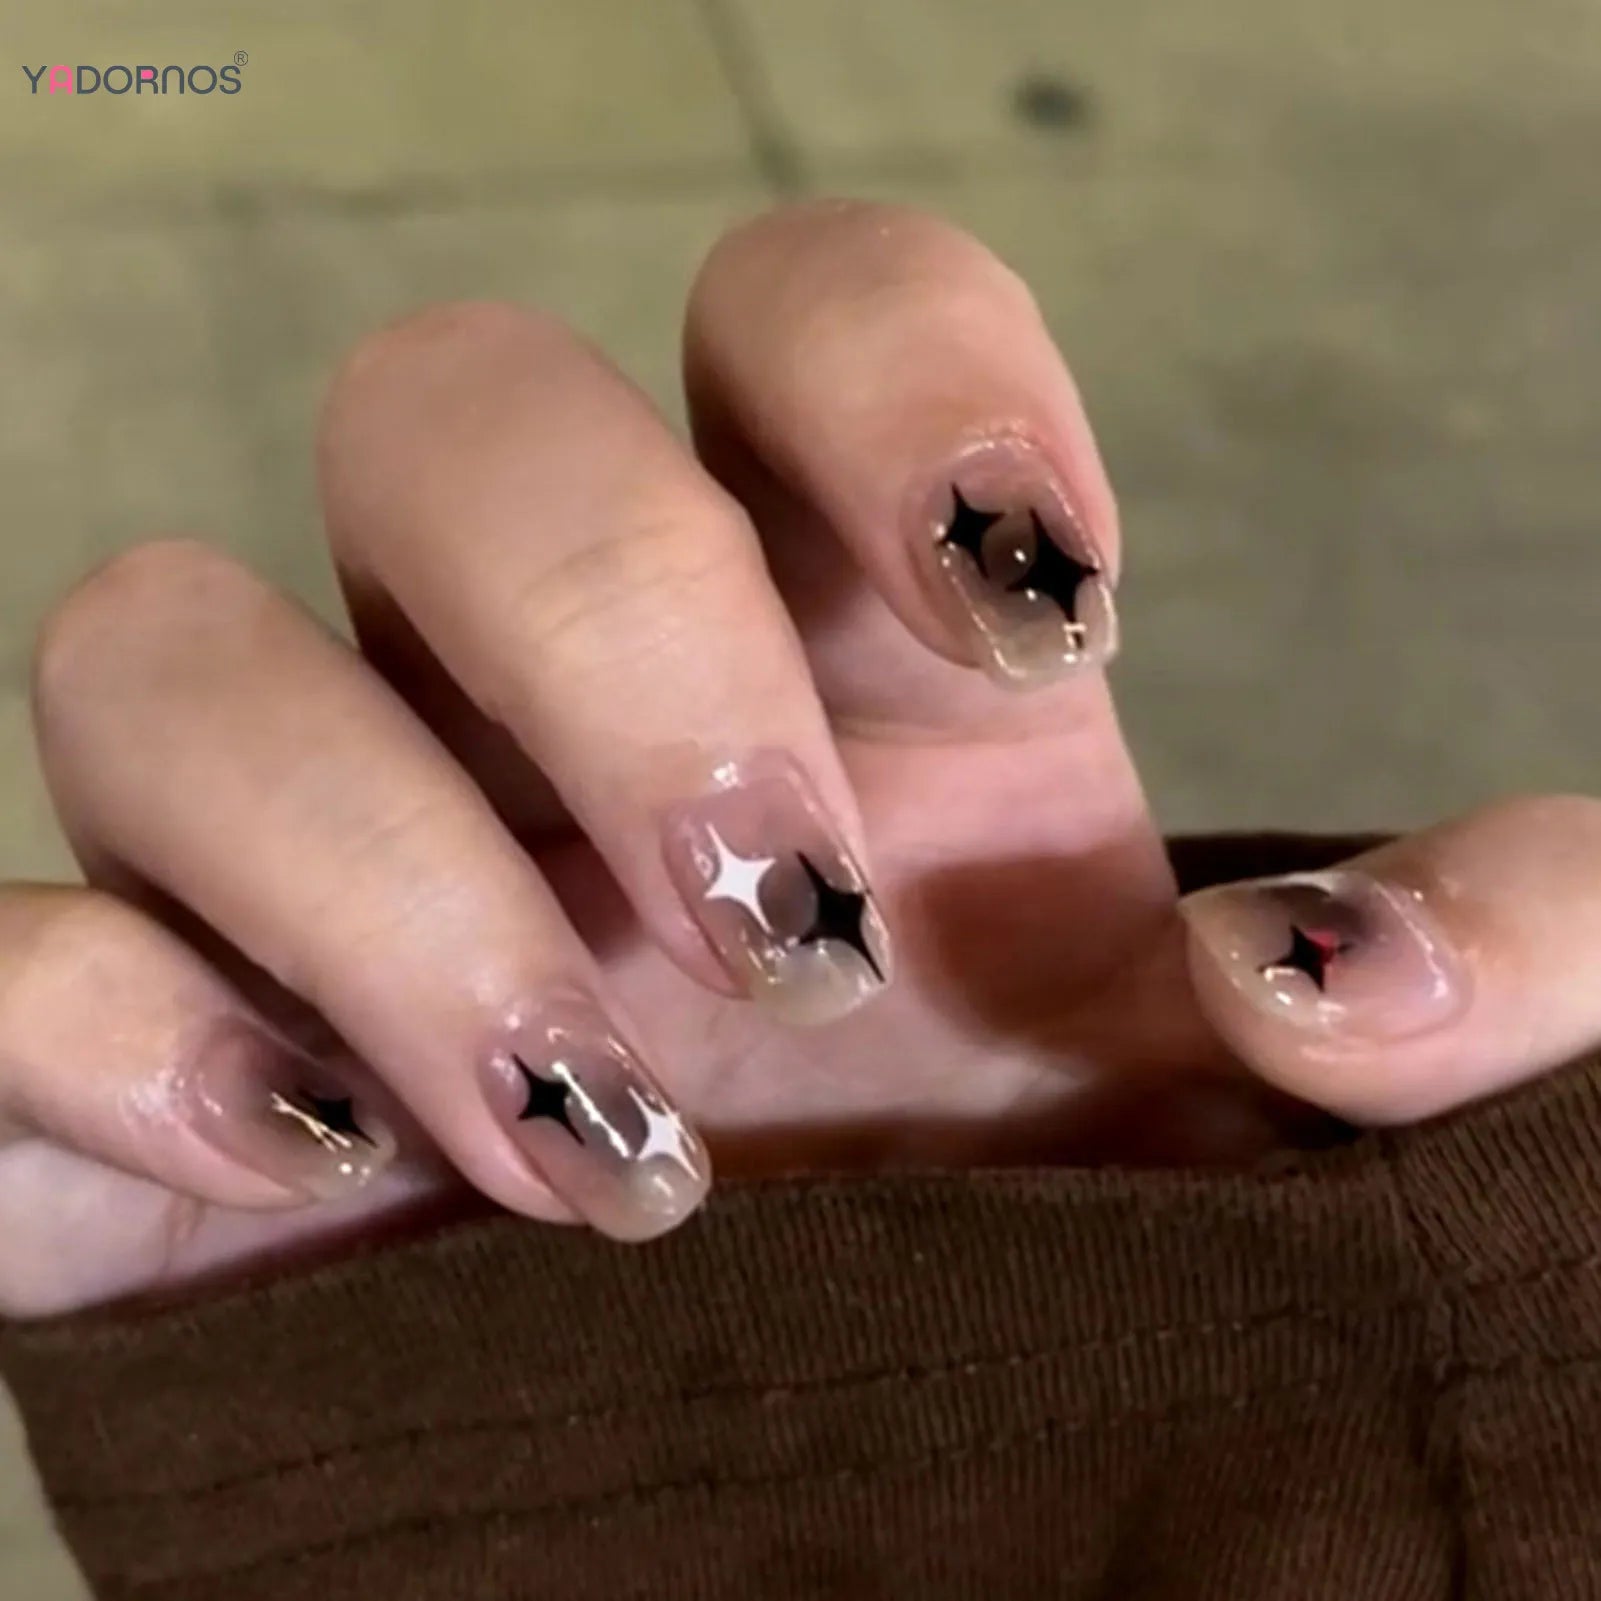 Y2k schwarzer weißer Star künstliche falsche Nägel Voller Cover kurzer falscher Nagel abnehmbare Presse auf Nägeln für Frauen Mädchen DIY Maniküre Kunst